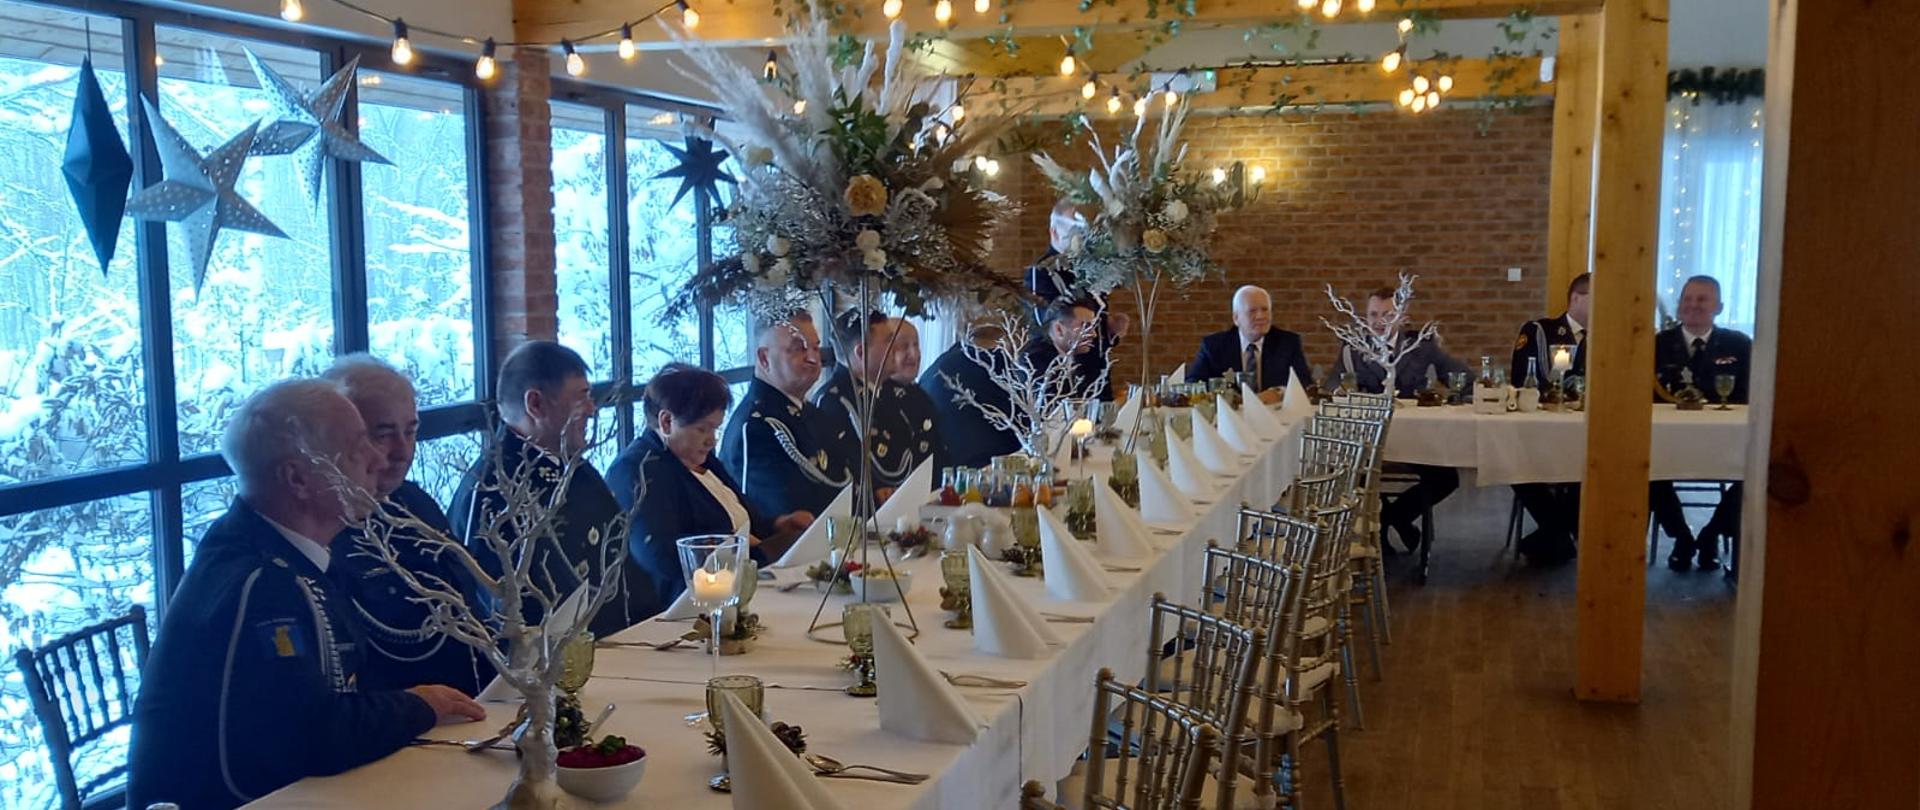 Zaproszeni goście siedzą przy stole